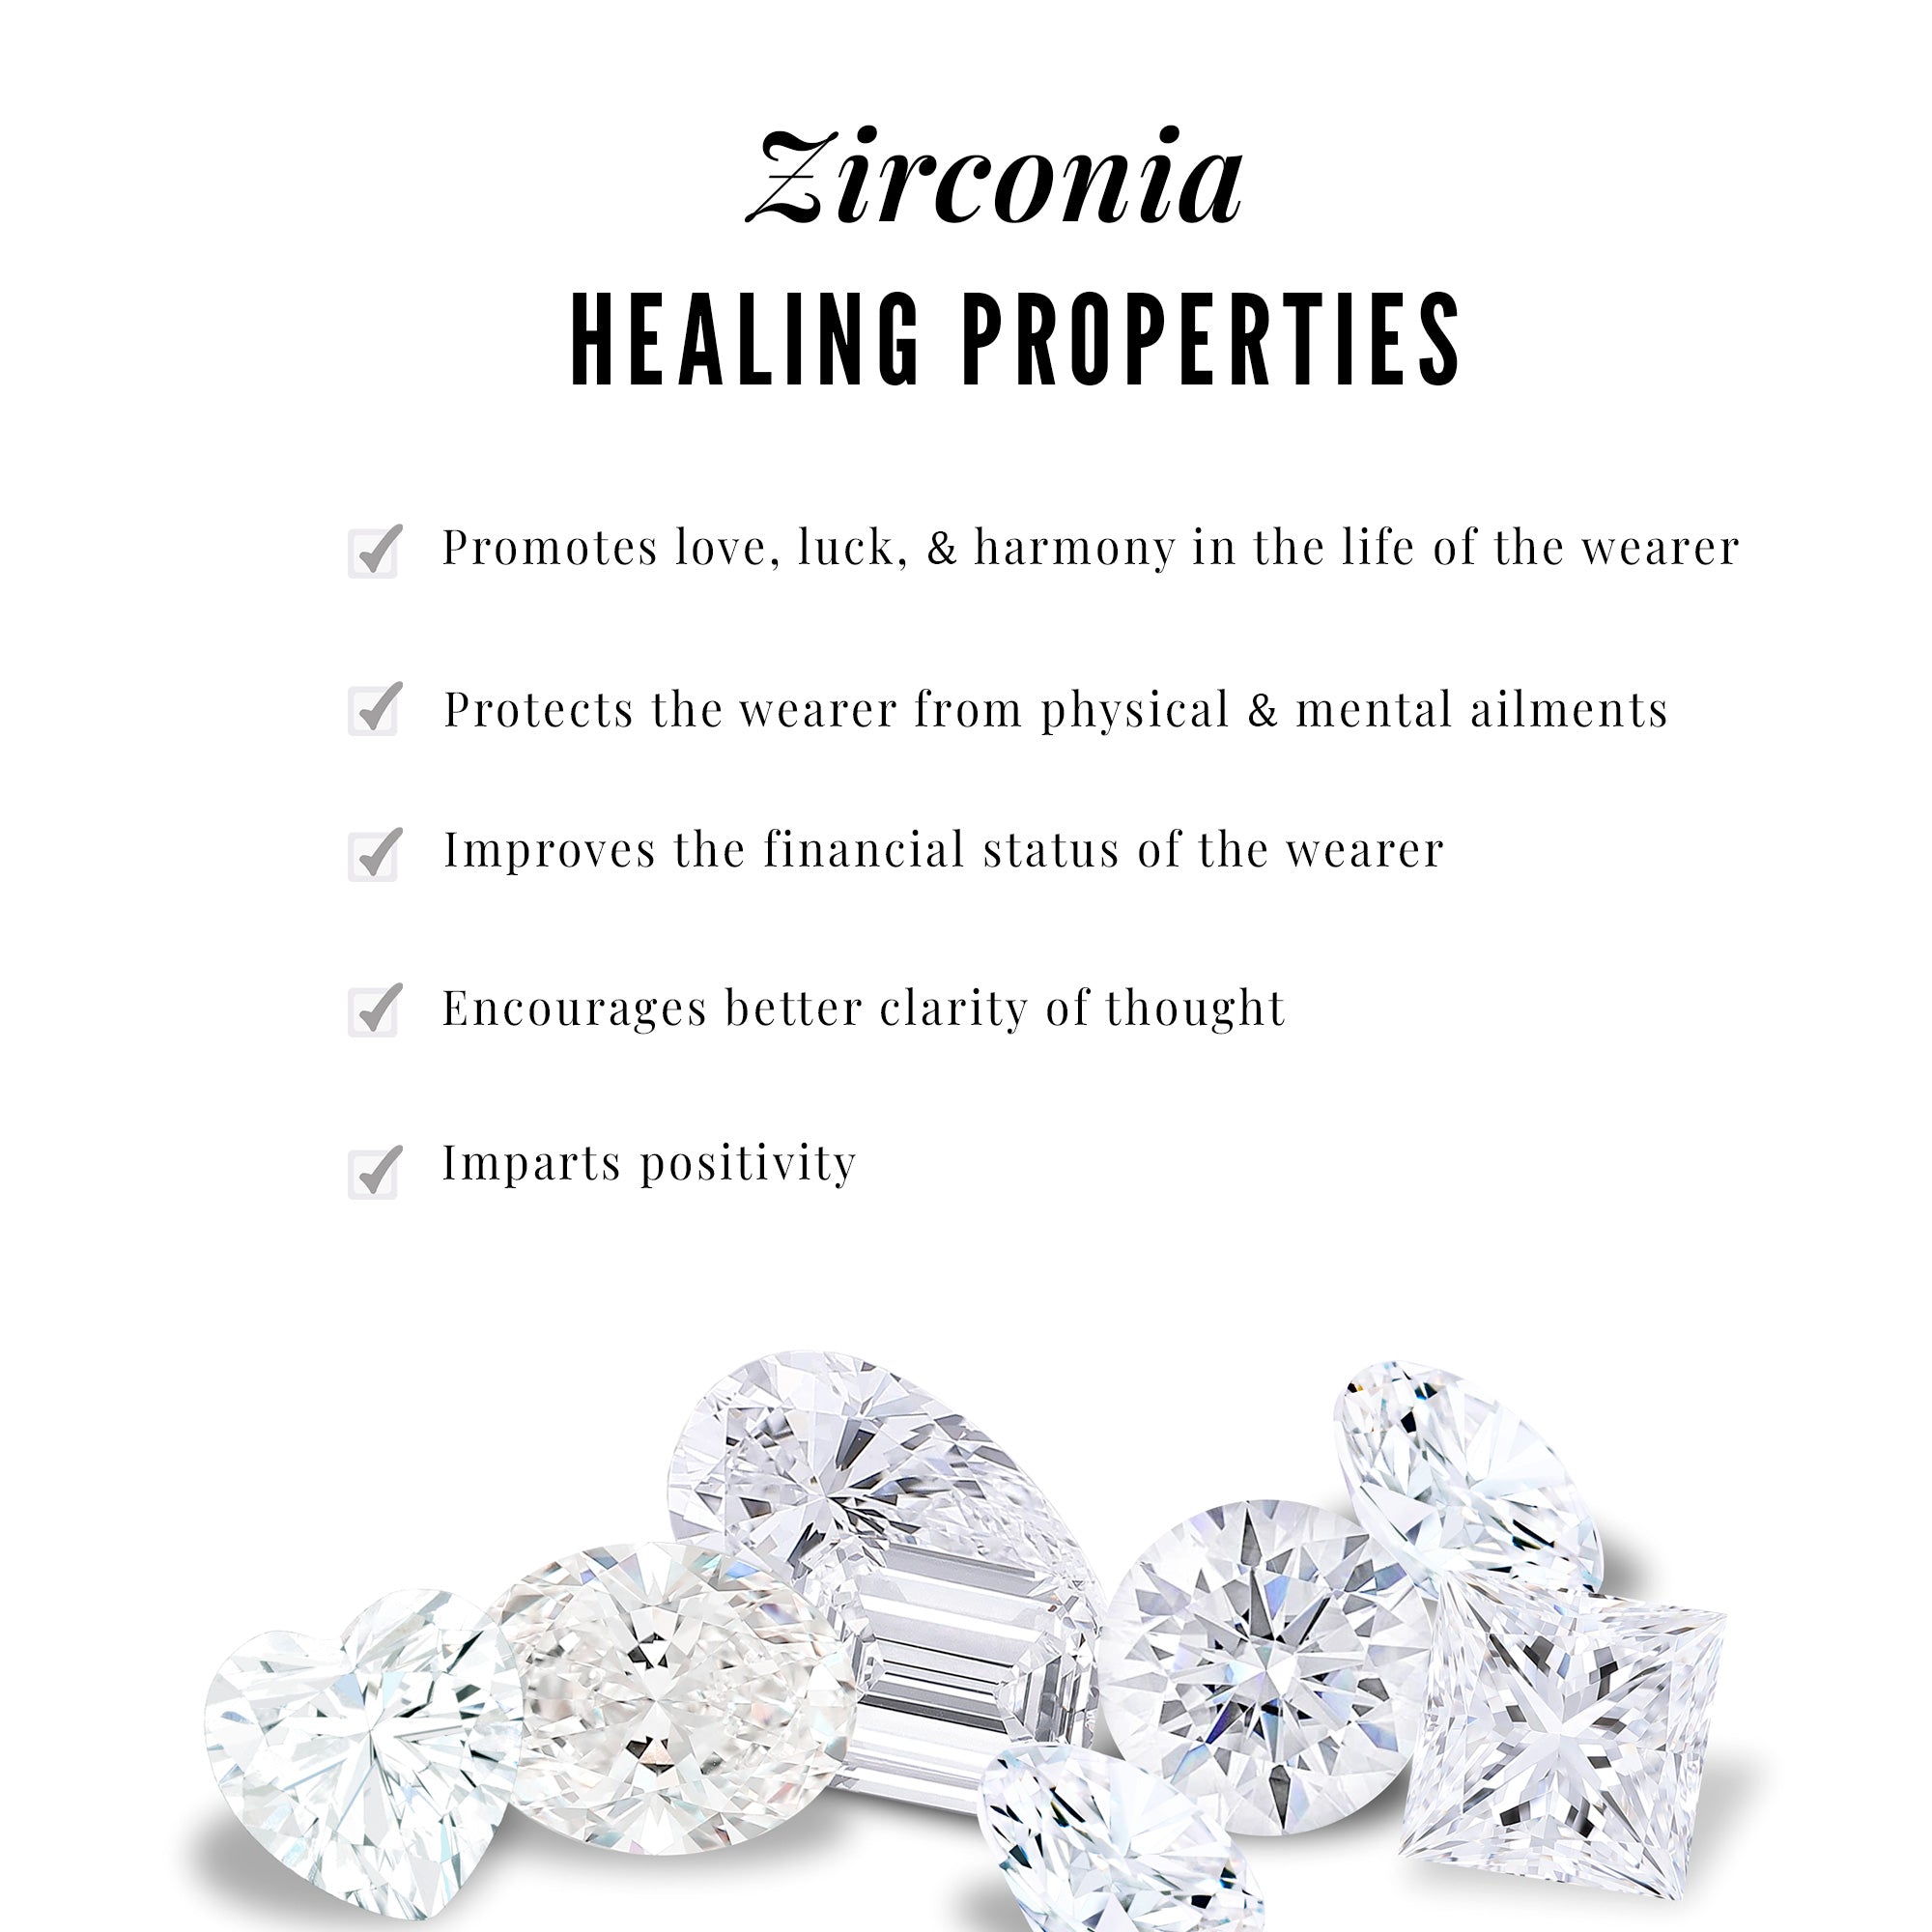 1/2 CT Zircon Gold Heart Drop Earrings in Bezel Setting Zircon - ( AAAA ) - Quality - Rosec Jewels